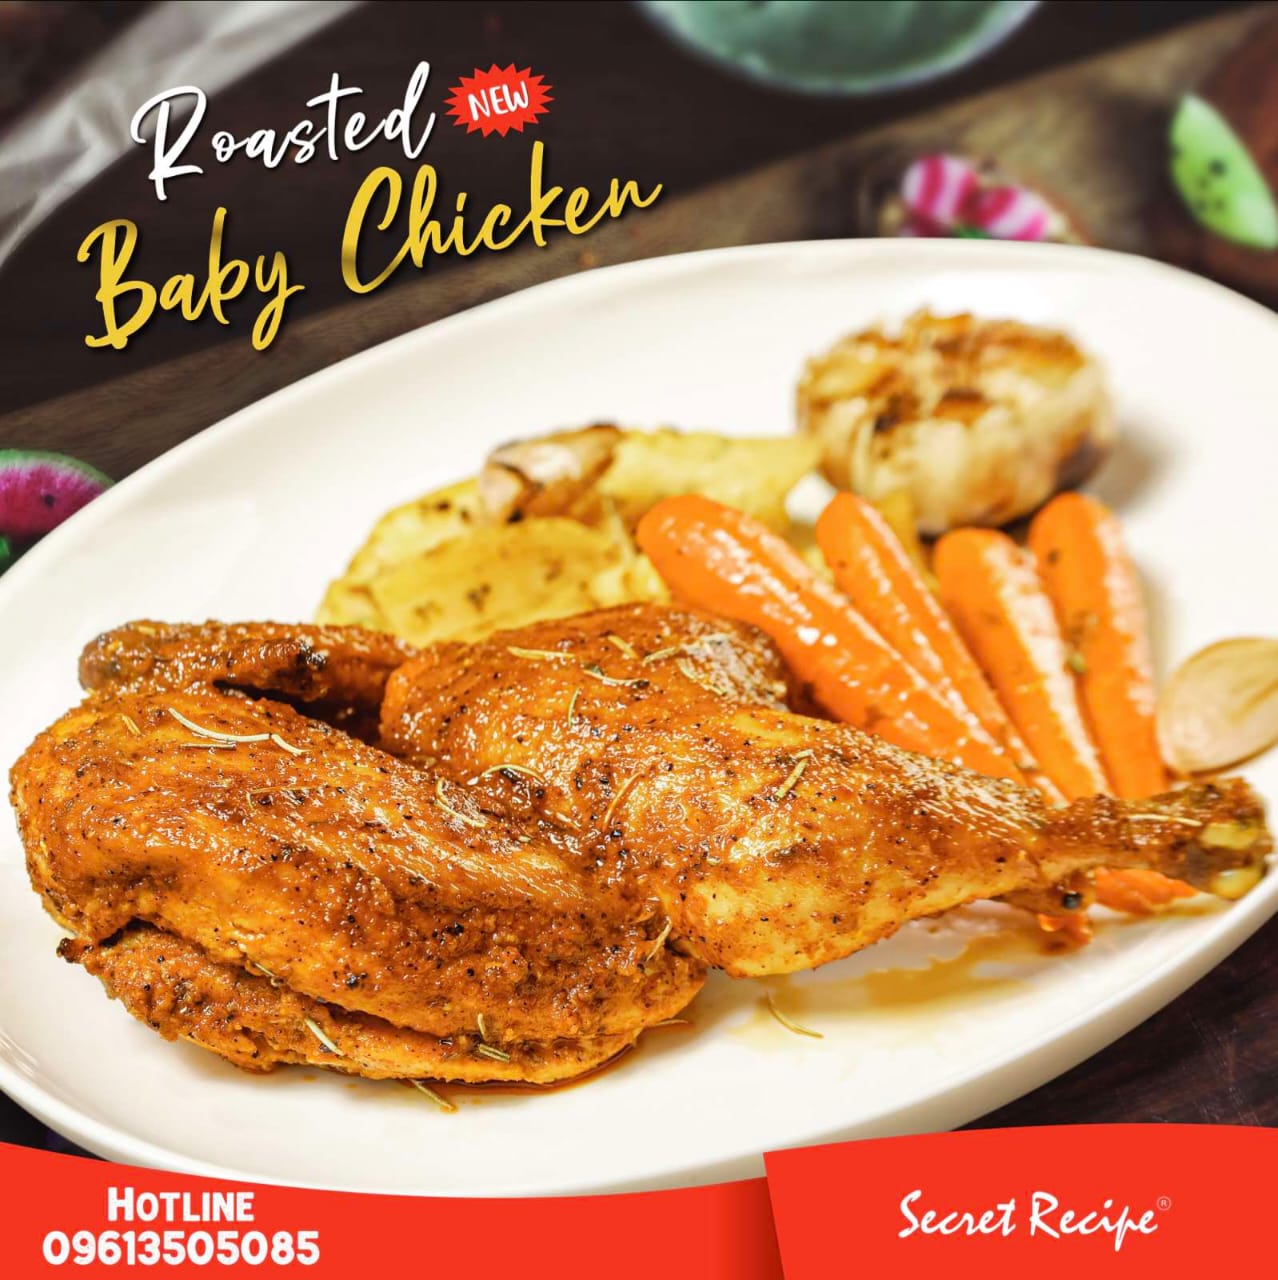 Roasted Baby Chicken | baby chicken | roasted chicken | Best roasted chicken in Dhaka | best baby chicken in Dhaka | Best chicken in Dhaka | best restaurant in Dhaka | Best restaurant near me